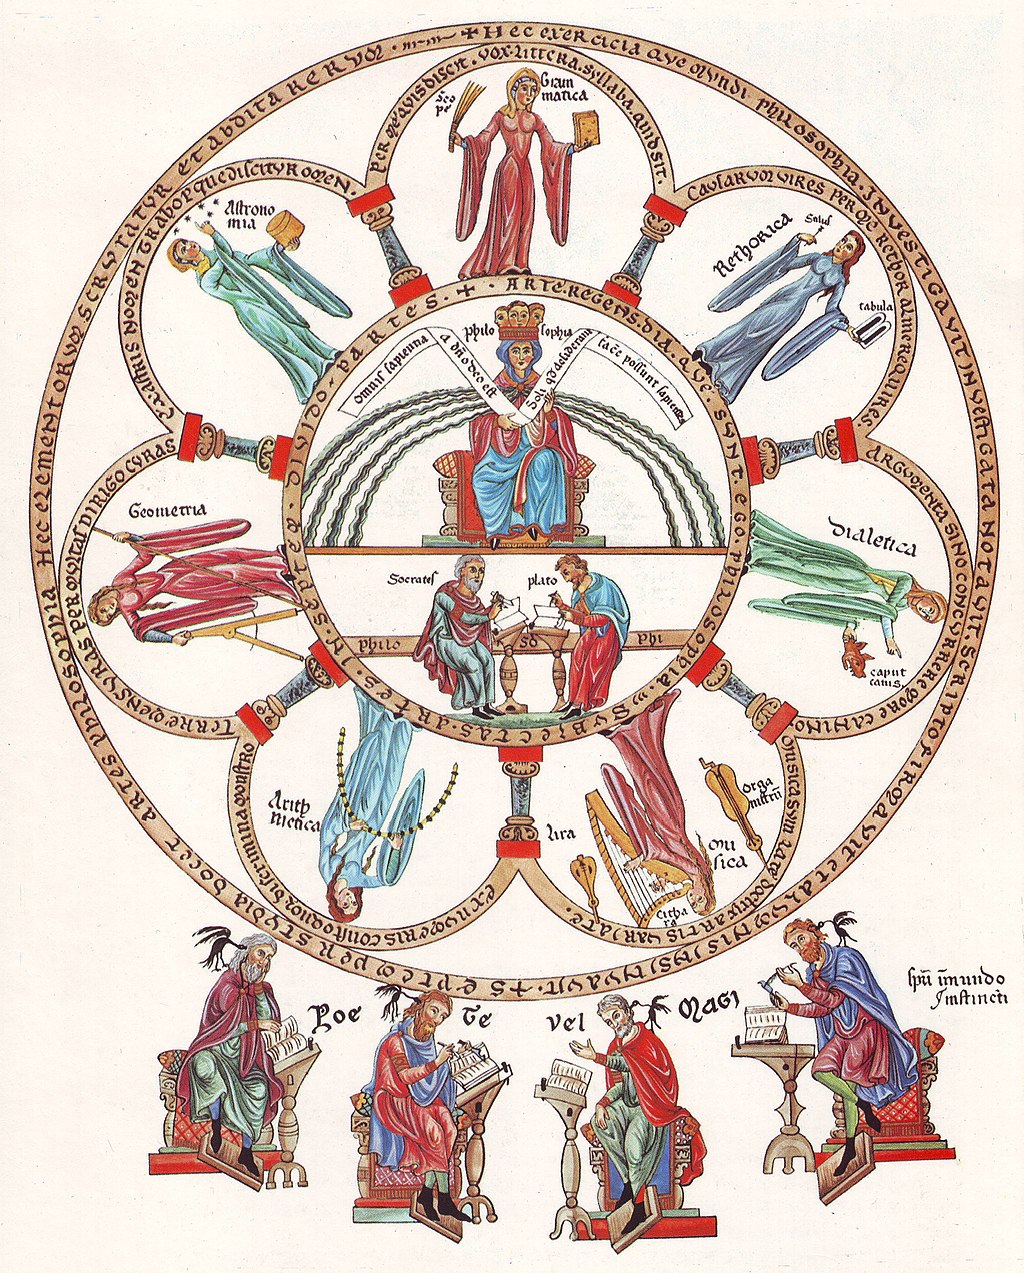 Hortus Deliciarum, Die Philosophie mit den sieben freien Künsten von Herrad of Landsberg (?) ca. 1180 [Public domain], via Wikimedia Commons